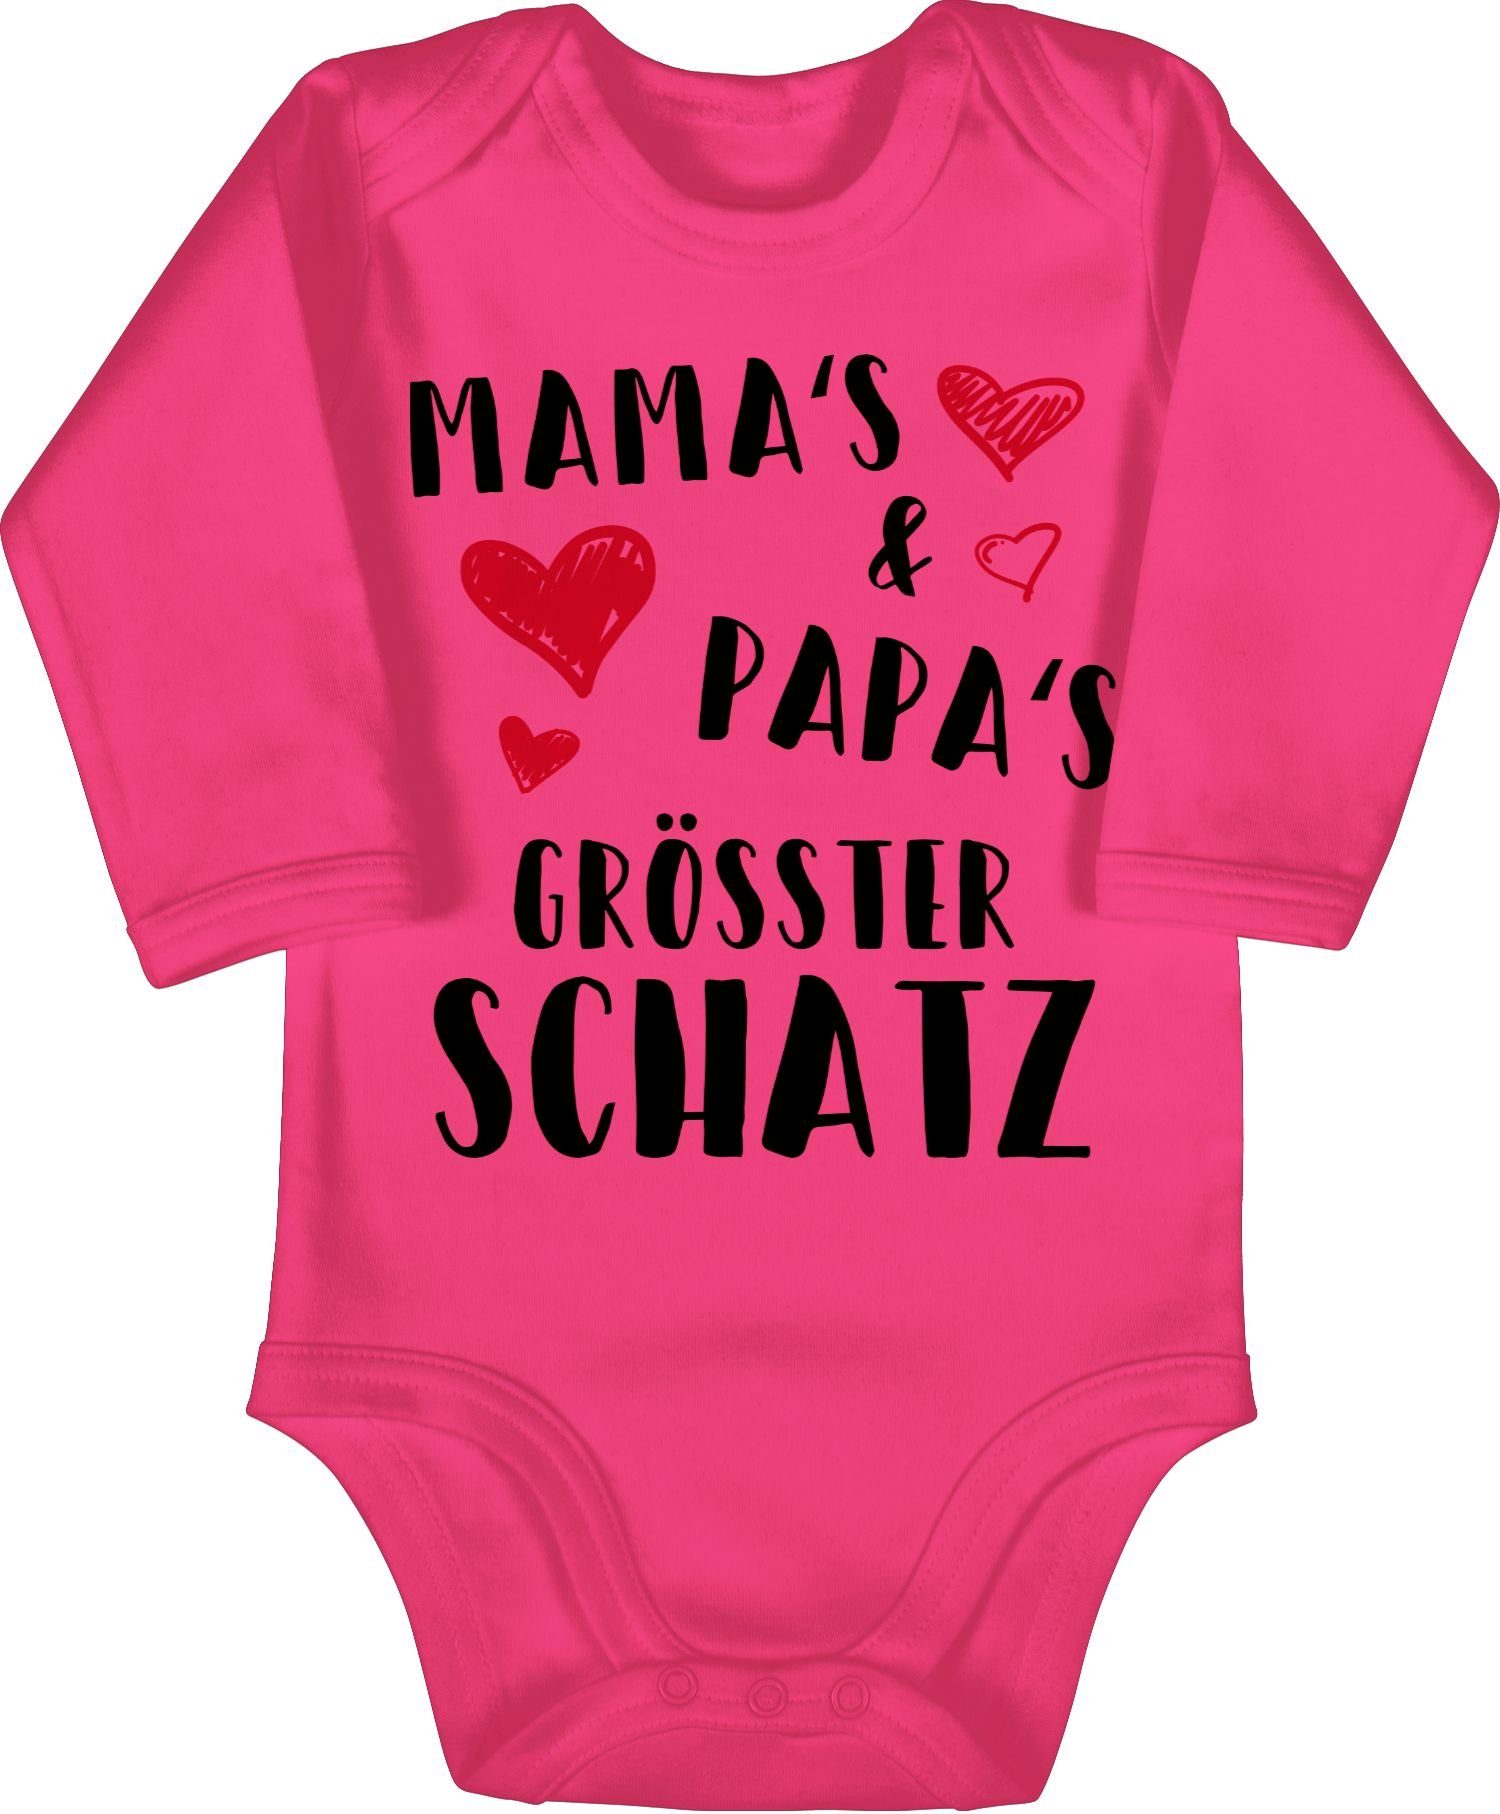 größter Fuchsia Mamas Baby und Schatz 2 Sprüche Shirtracer Shirtbody Papas